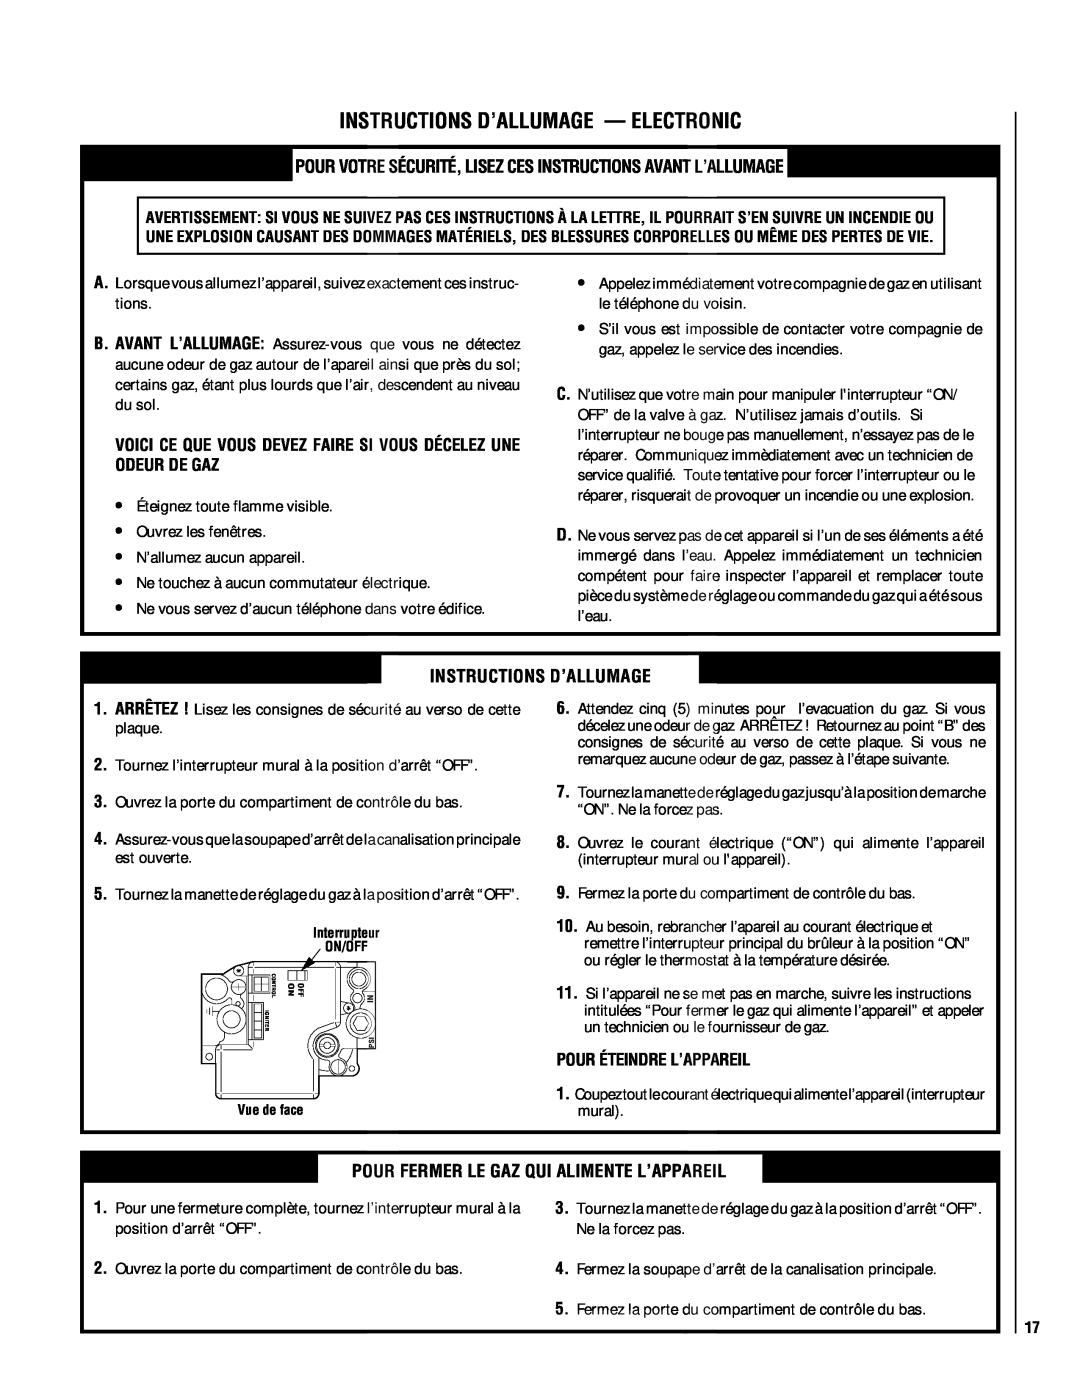 Lennox Hearth EBSTNM-2, EBSTPM-2 manual Instructions D’Allumage — Electronic, Pour Éteindre L’Appareil 